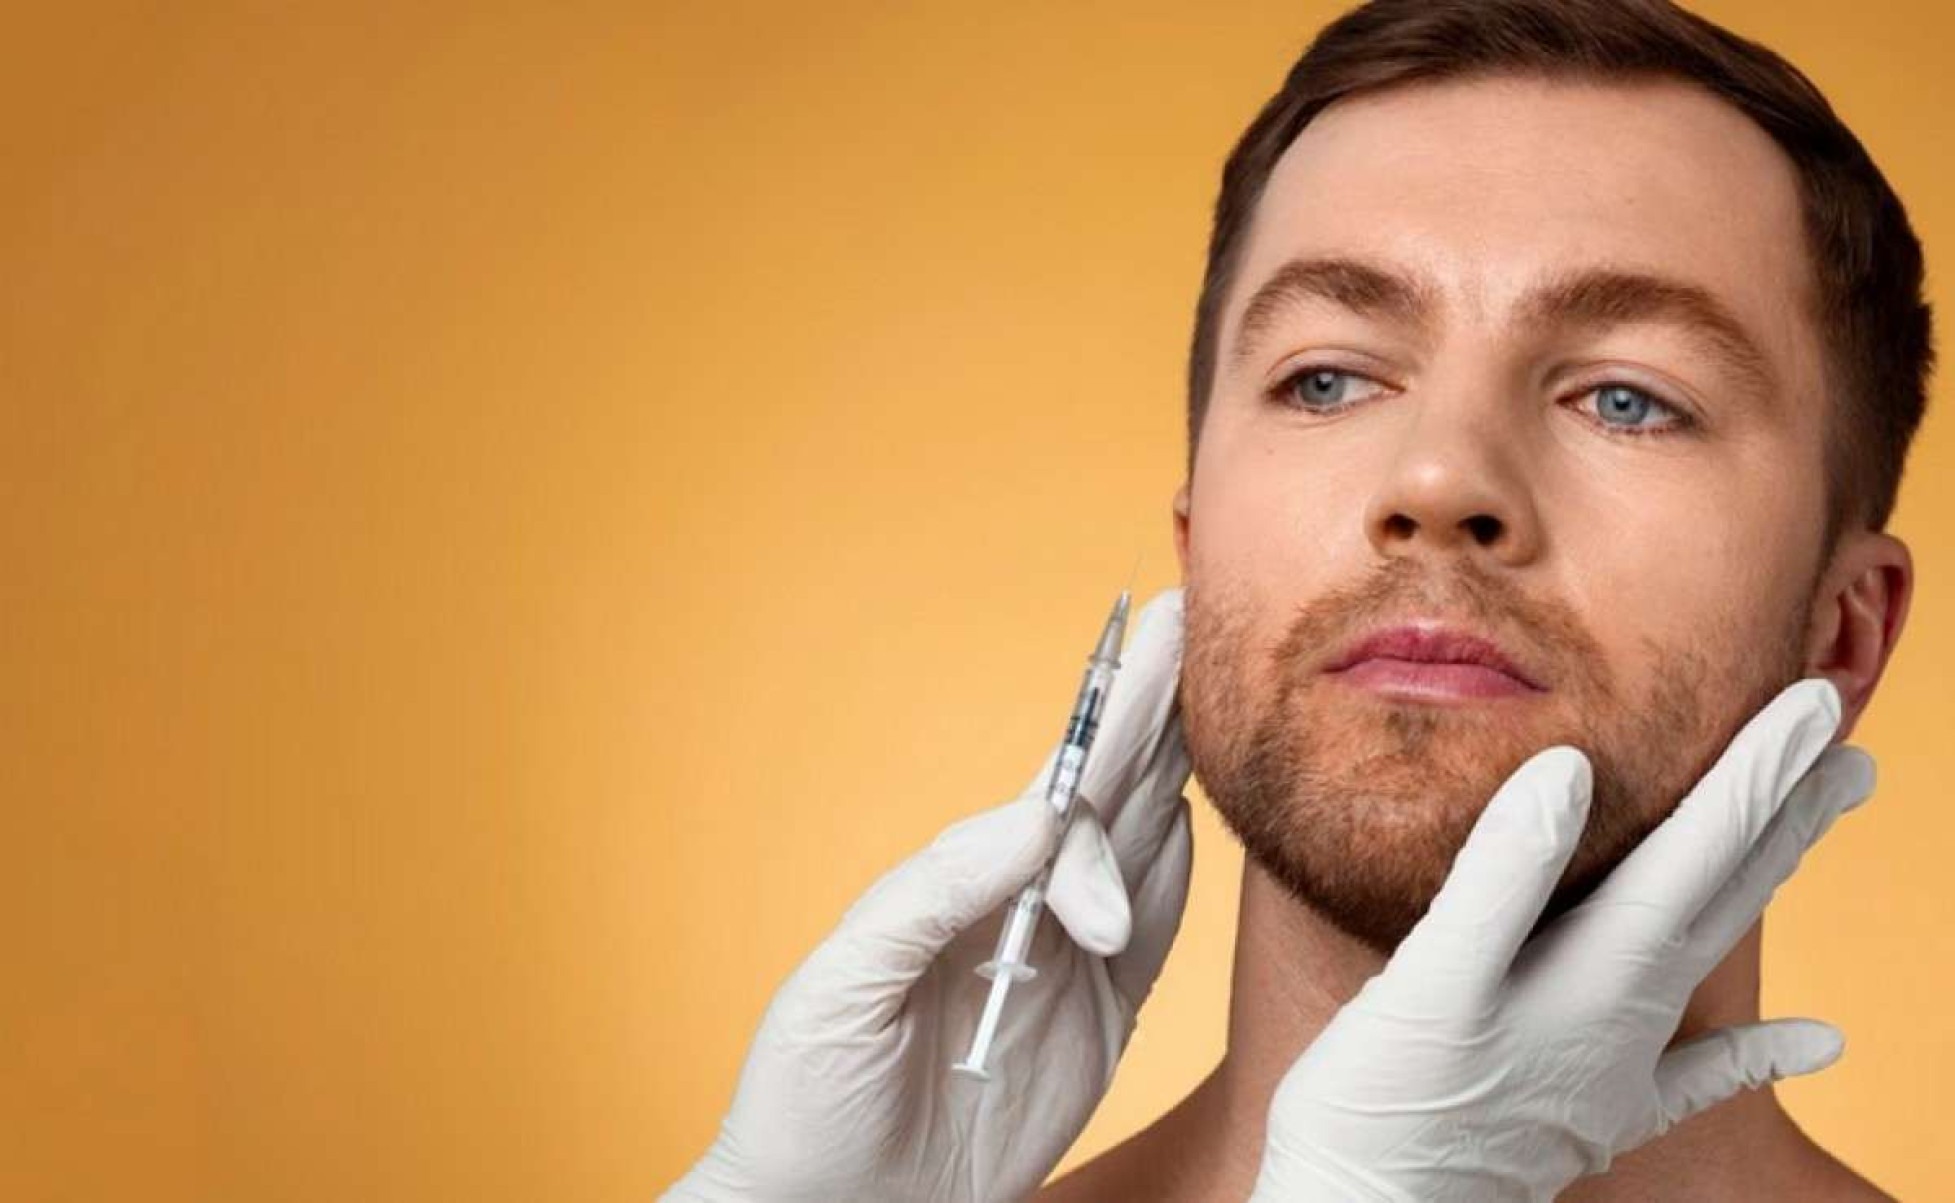 Avanço: 72% dos homens cuidam da própria beleza com procedimentos estéticos